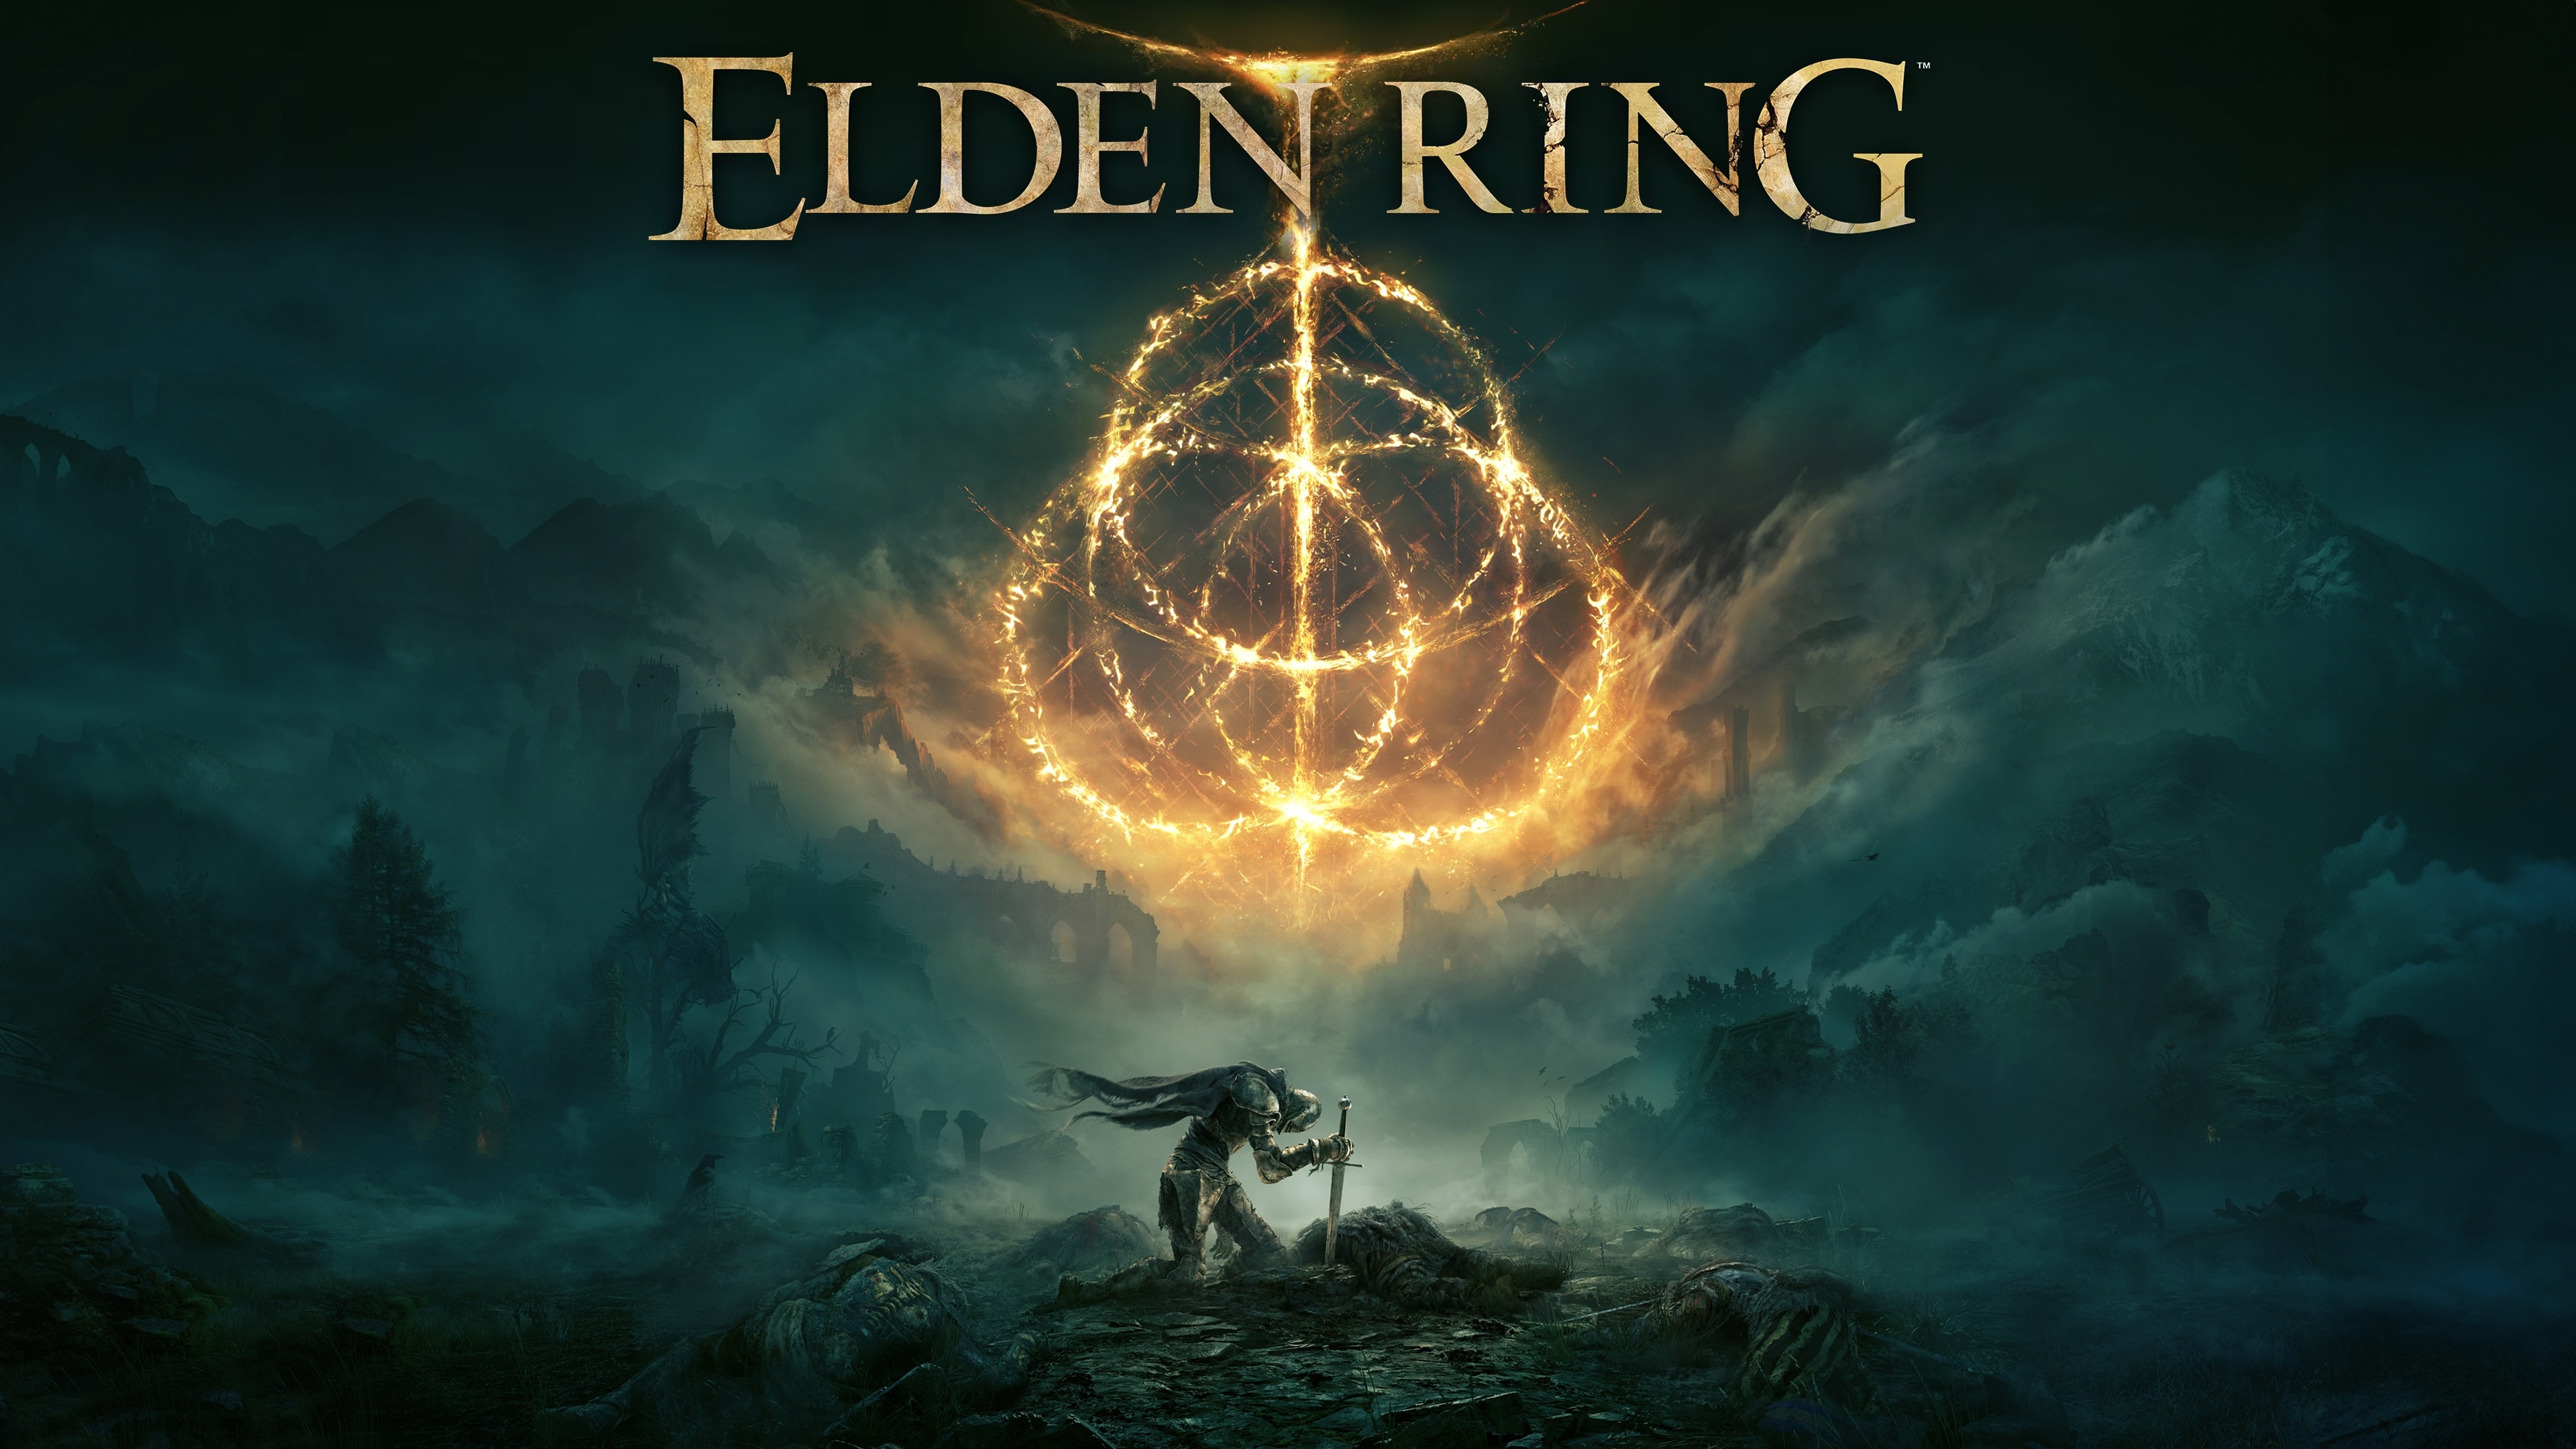 elden-ring-pc-game-steam-cover.jpg